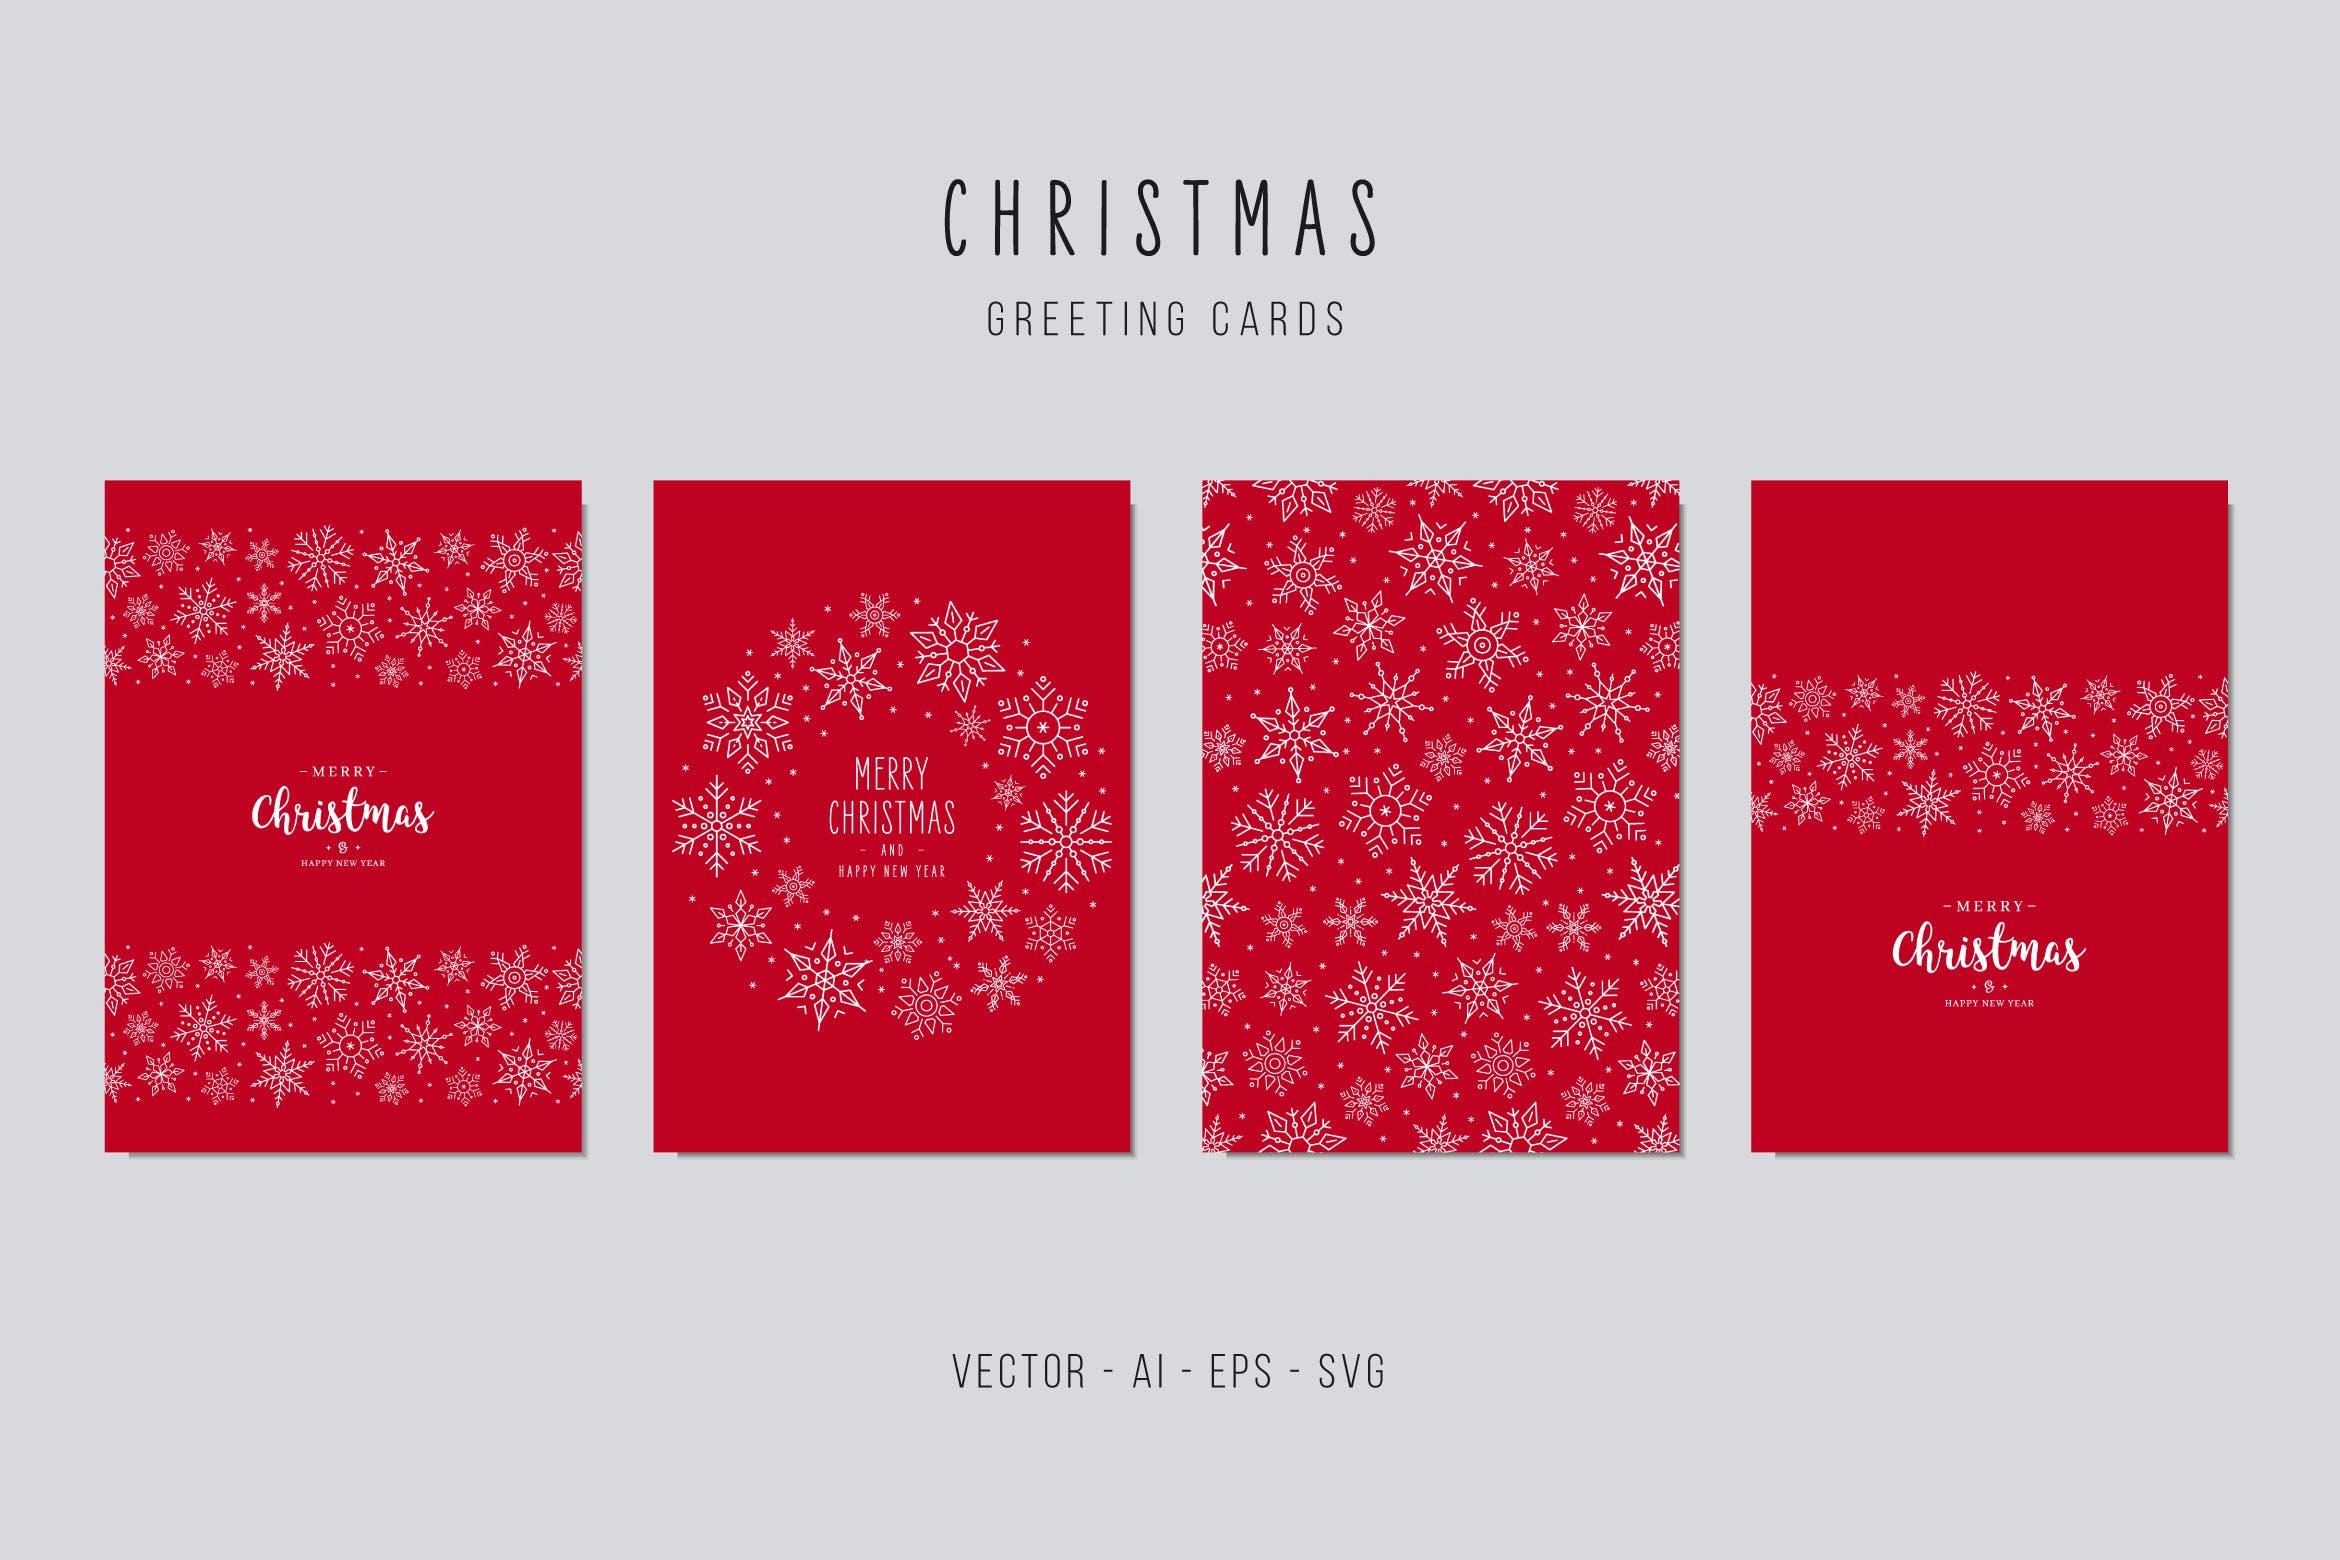 手绘圣诞节贺卡创意雪花矢量设计模板集v2 Christmas Greeting Vector Card Set设计素材模板